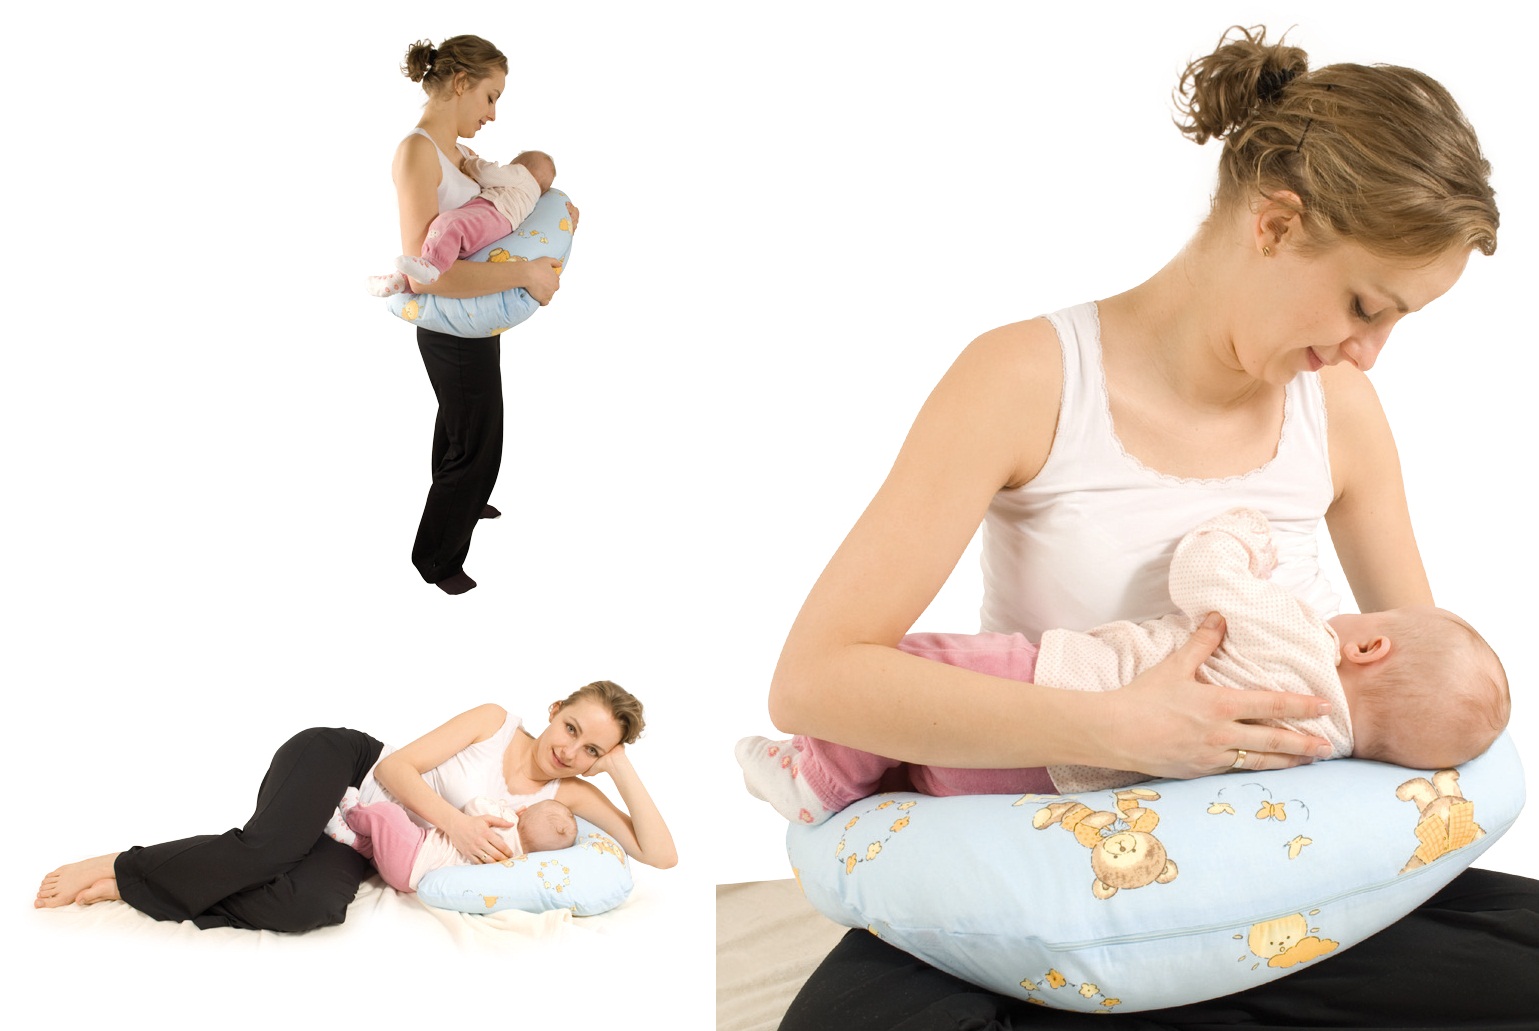 Подушка для кормления грудного ребенка: как сшить своими руками и пользоваться удобным предметом